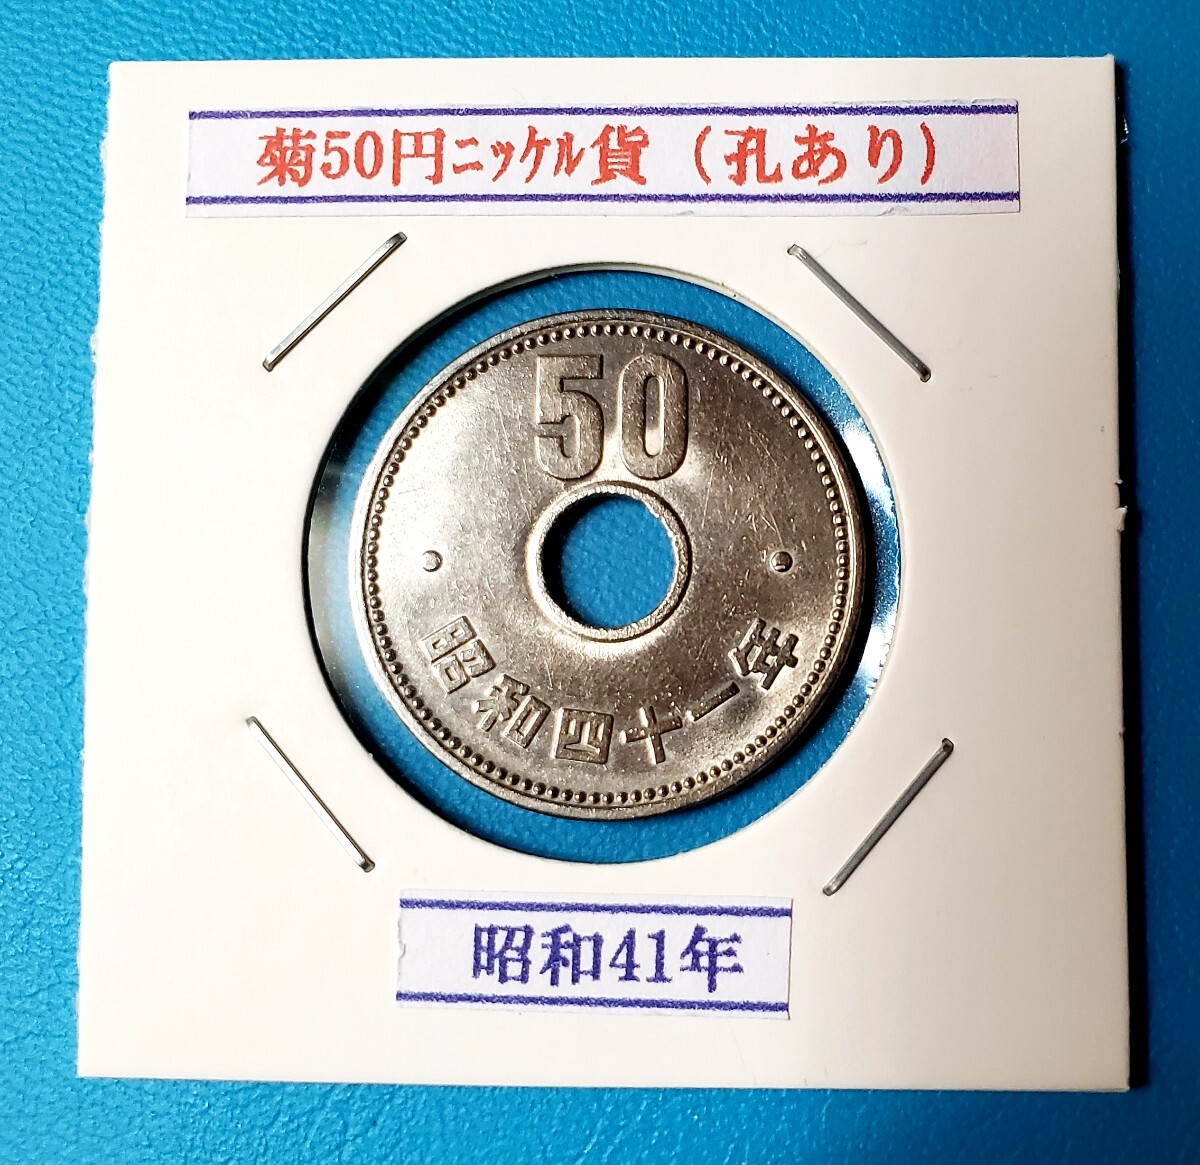 50円ニッケル貨 昭和41年         控え記号:W85の画像1